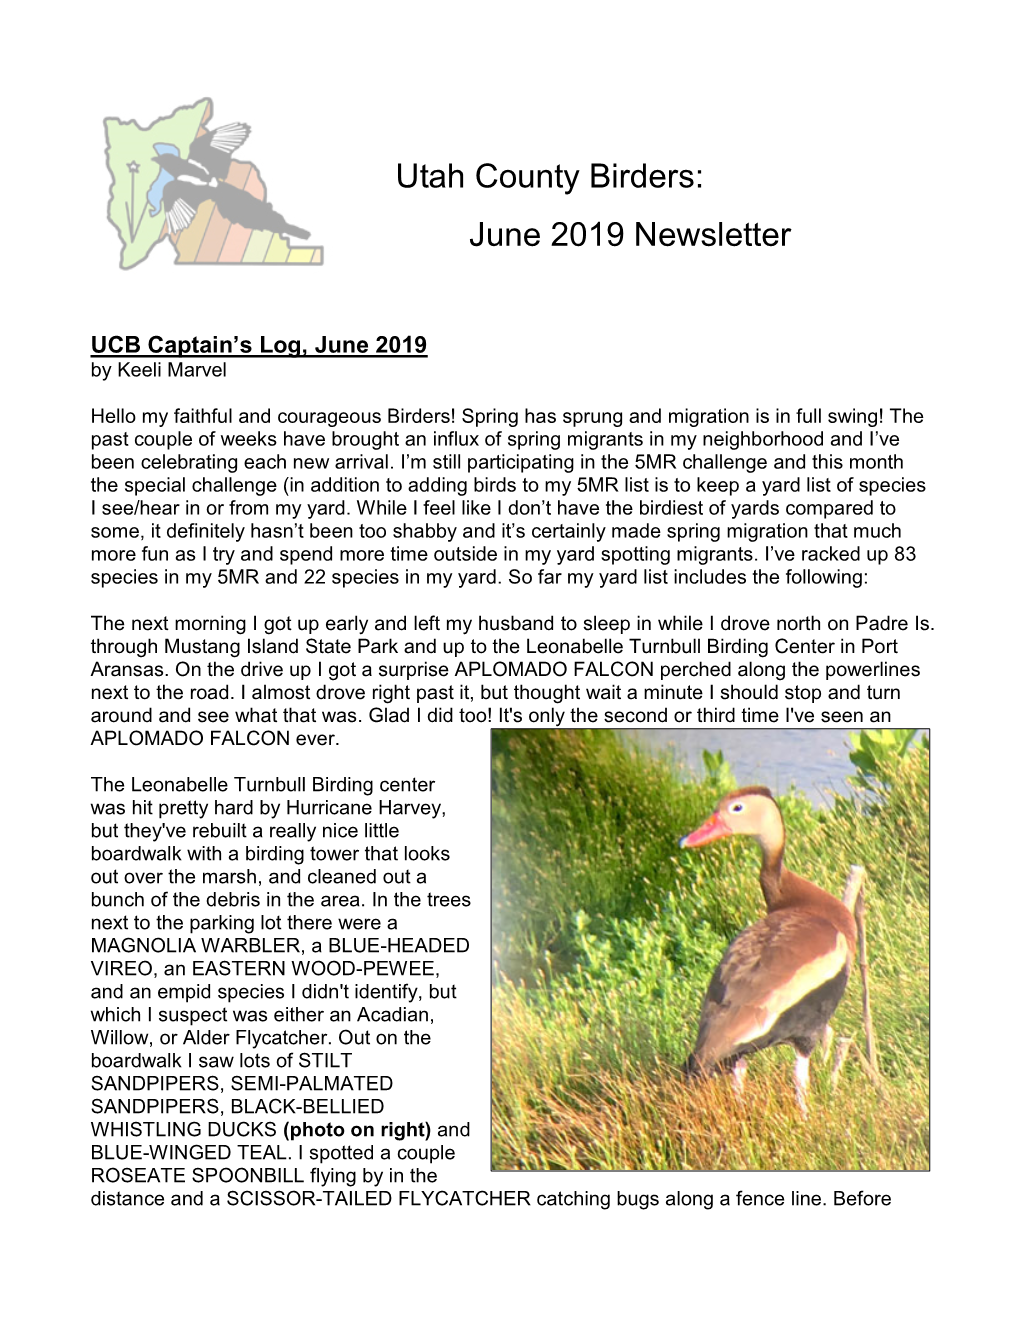 Utah County Birders: June 2019 Newsletter